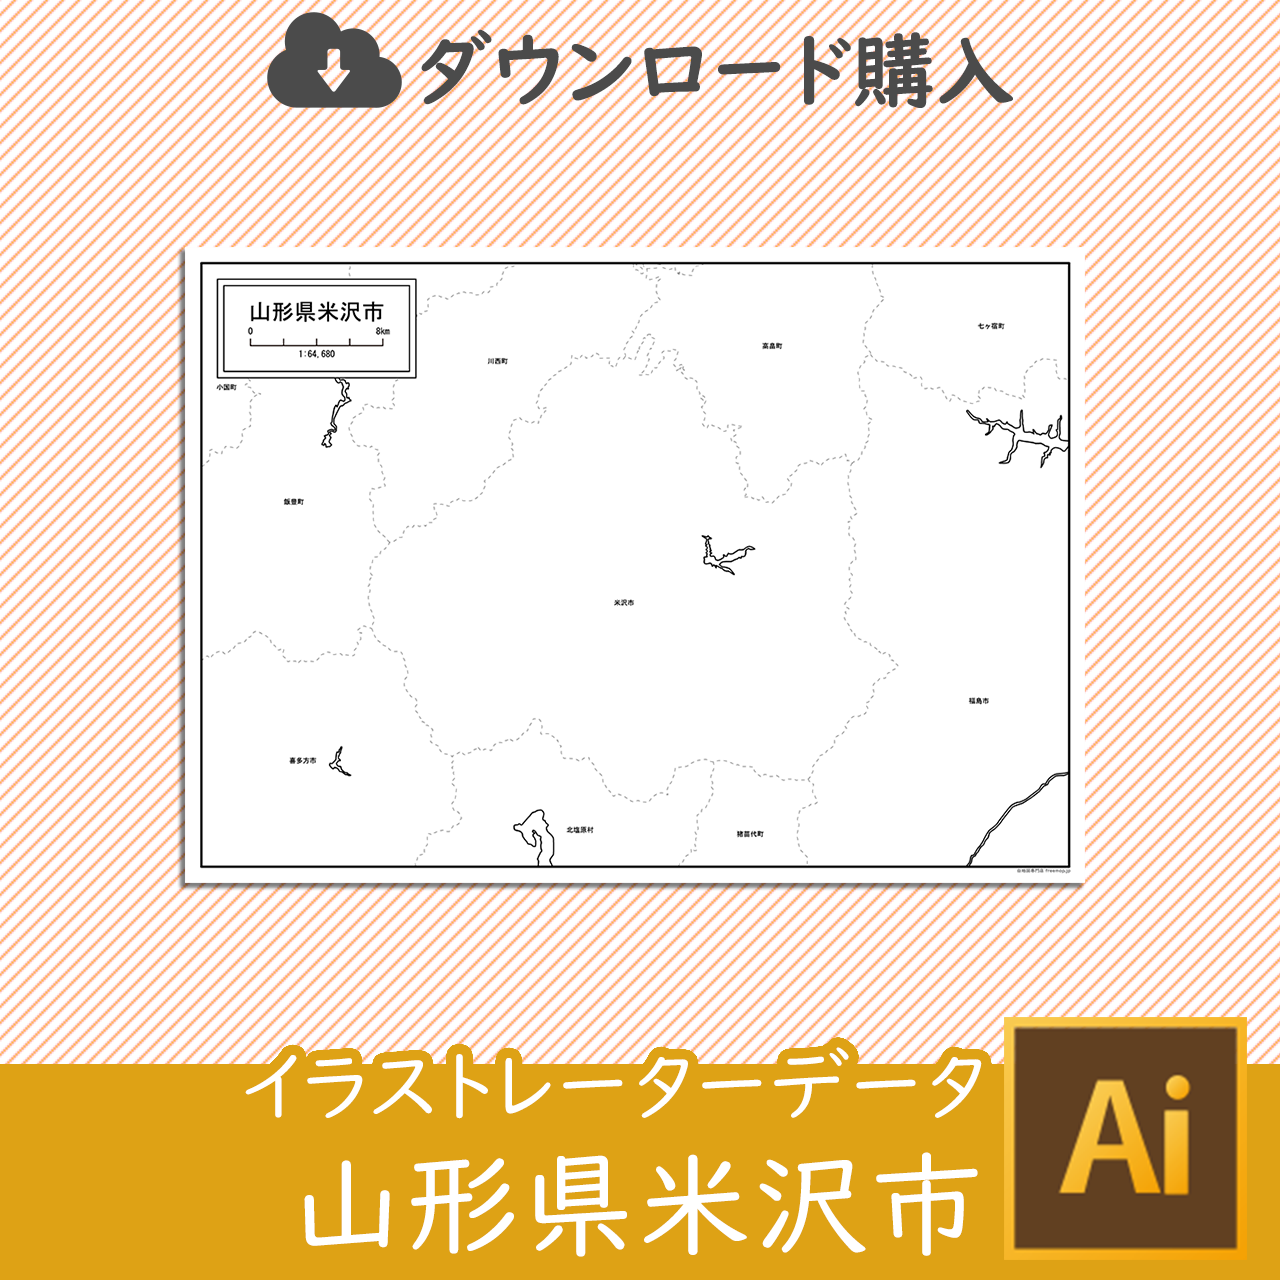 米沢市のaiデータのサムネイル画像